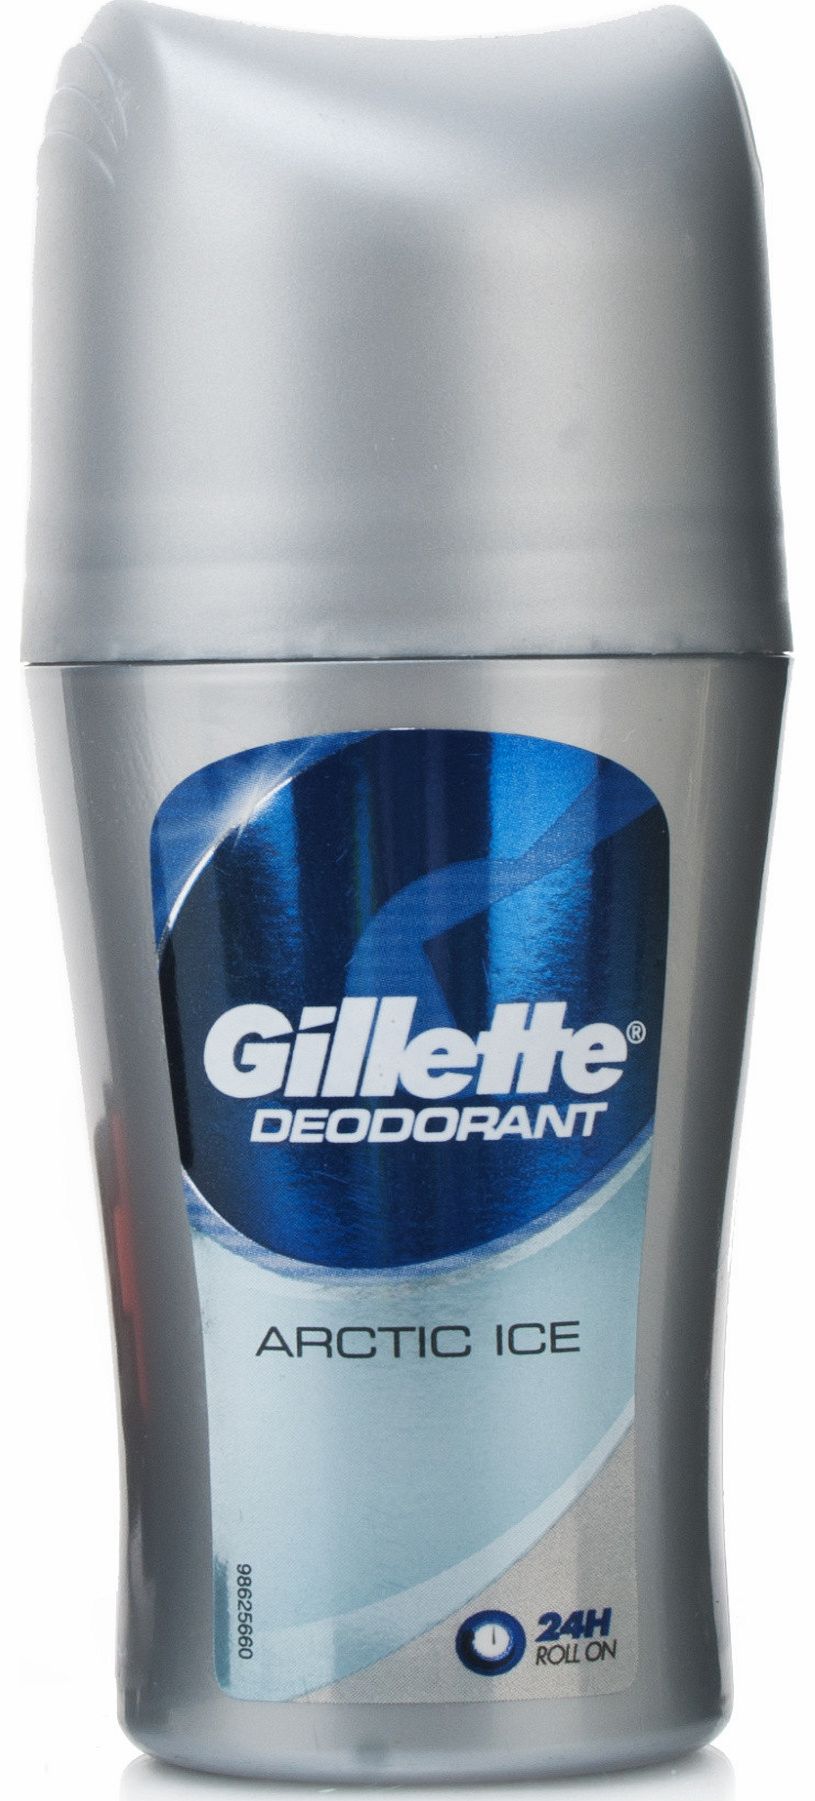 Gillette Arctic Ice Anti-Perspirant Deodorant